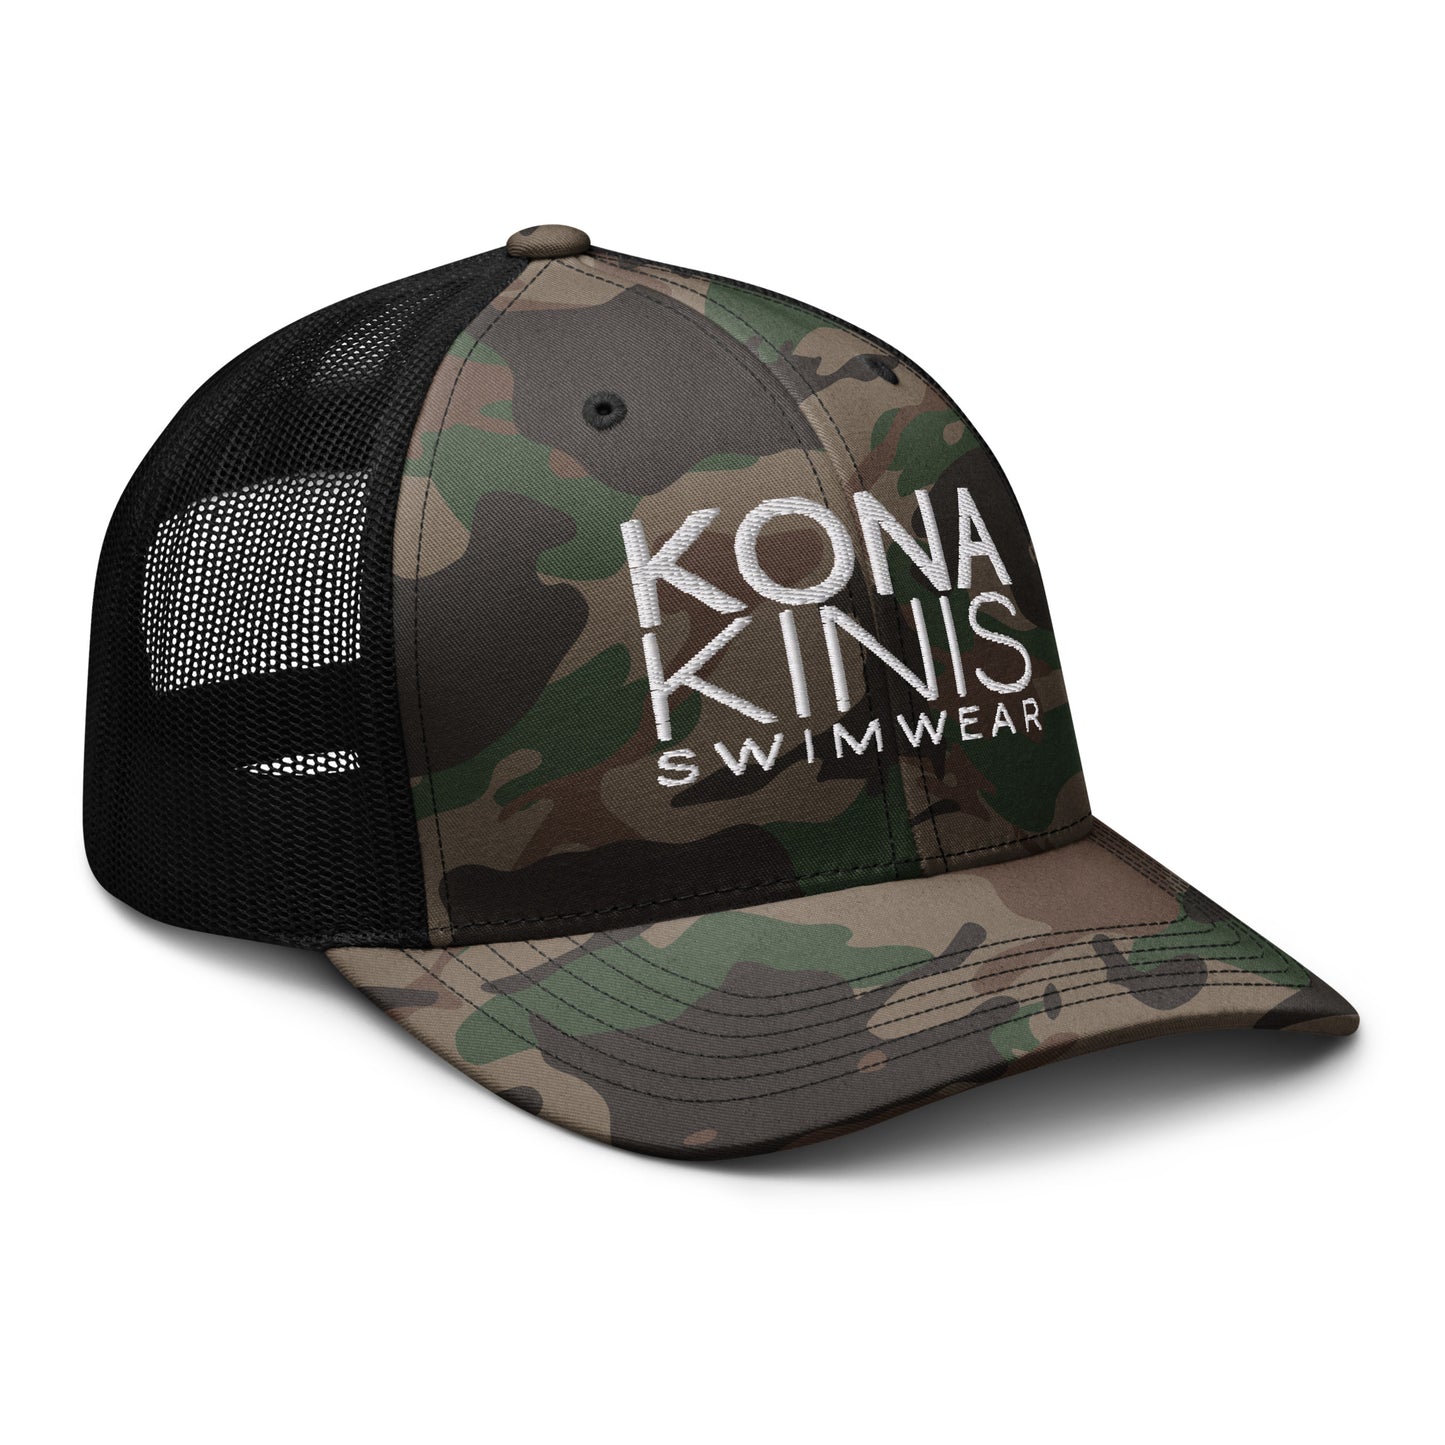 Camouflage trucker hat - Kona Kinis Swimwear